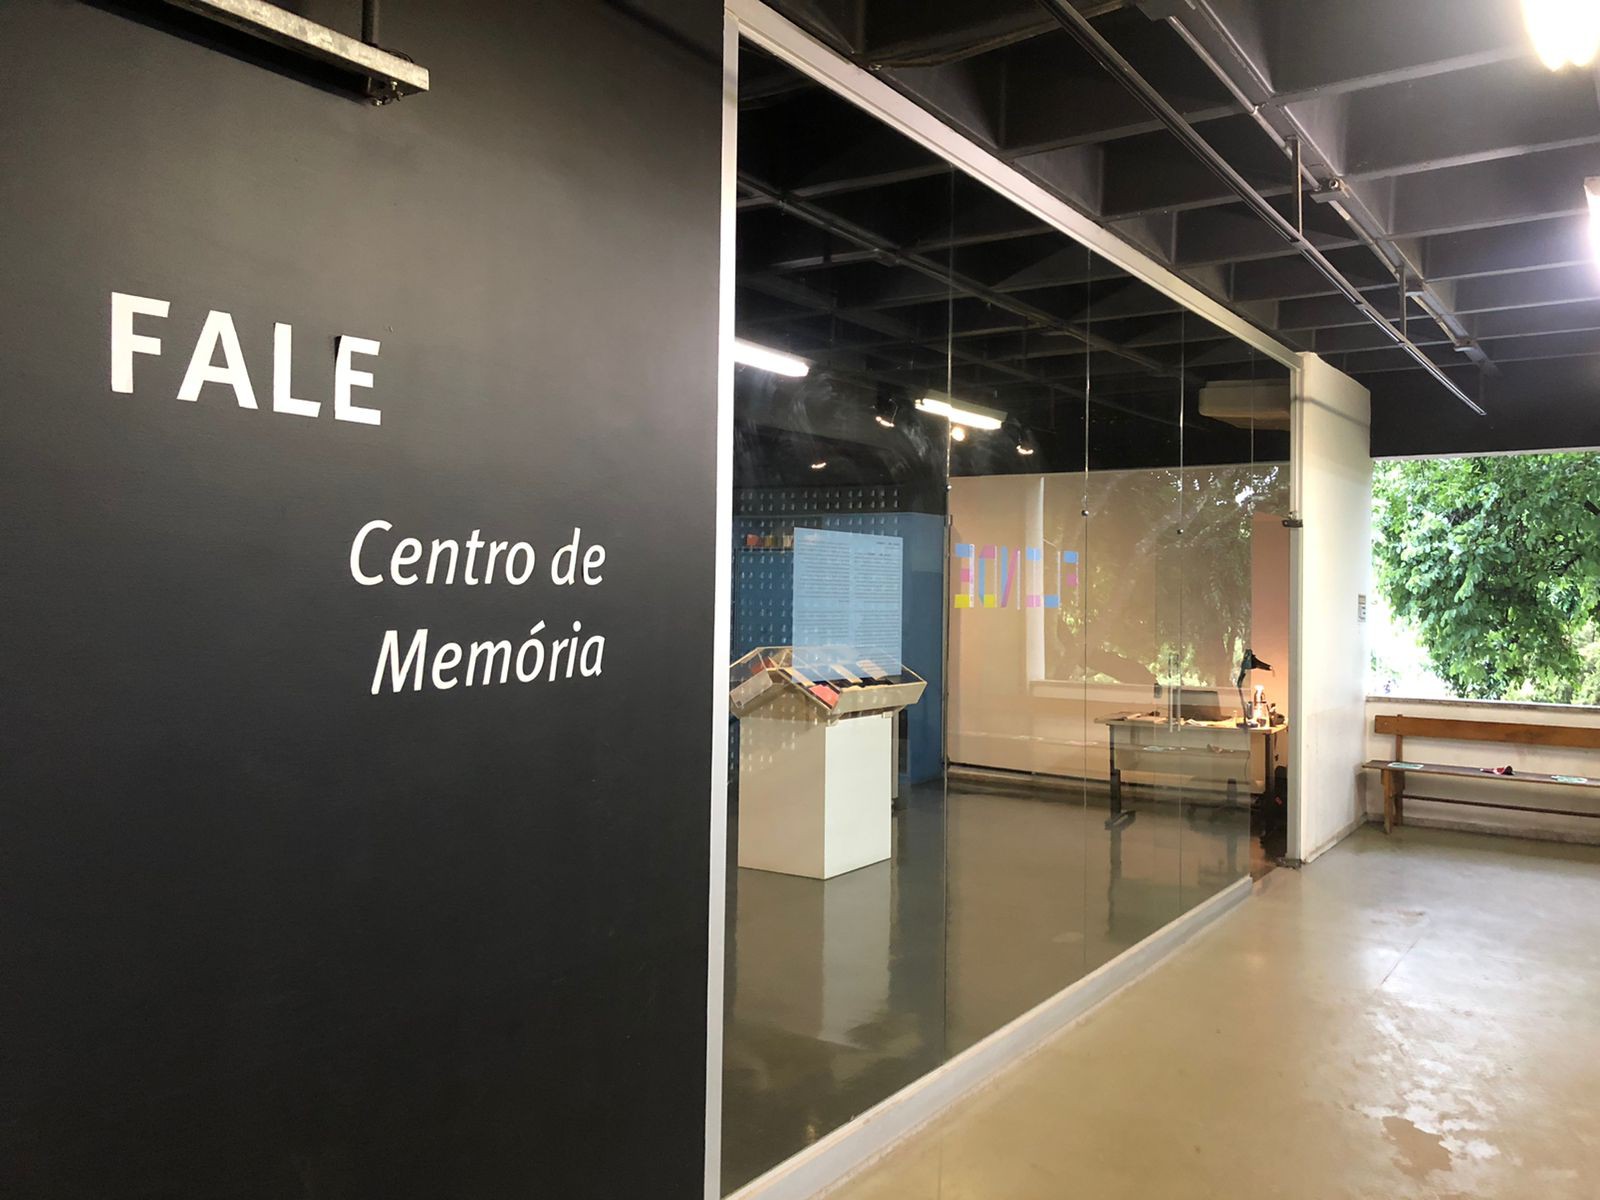 Centro de Memória da Fale é um dos espaços da Rede de Museus da UFMG